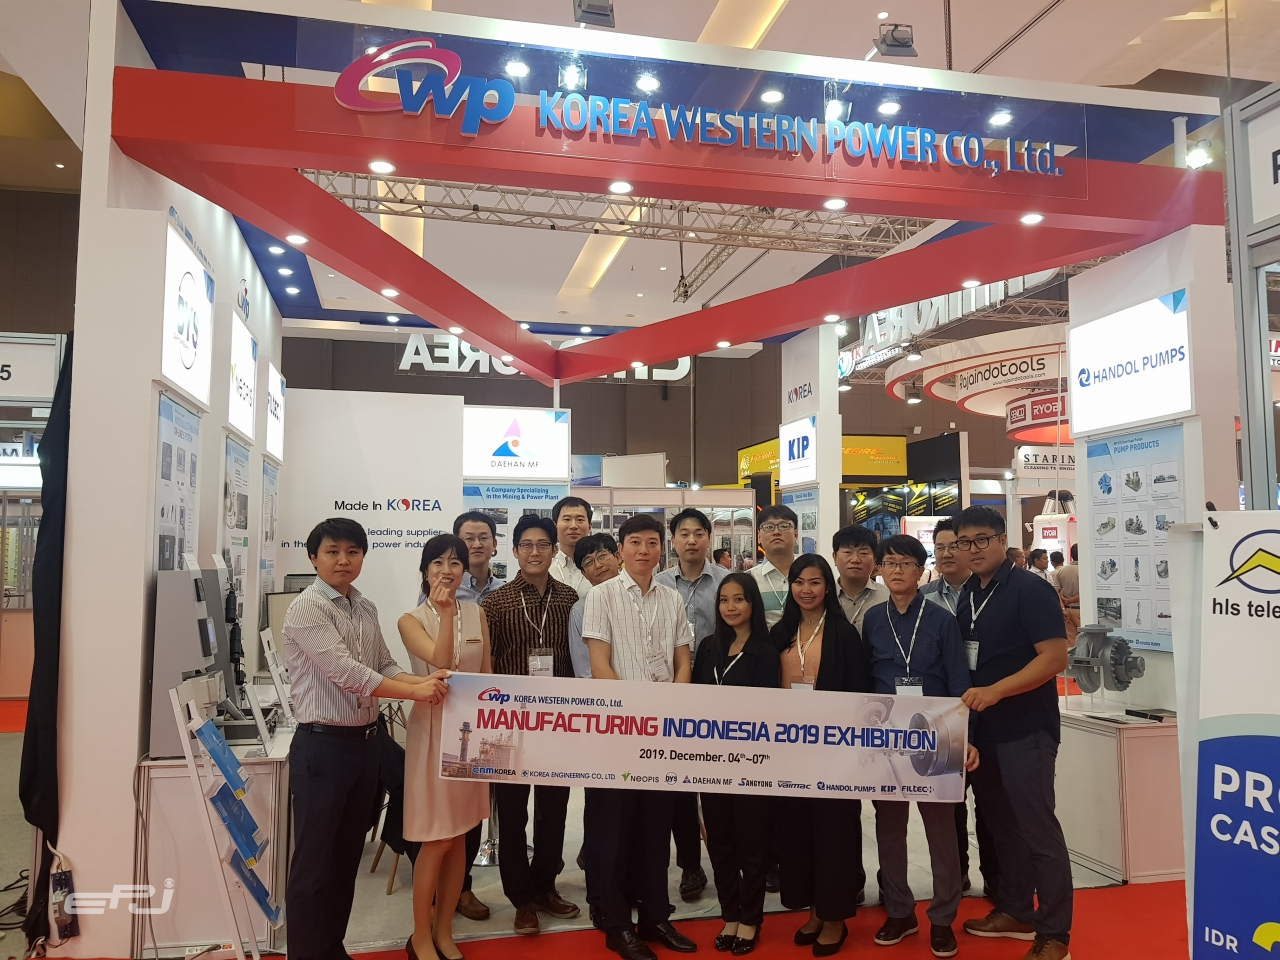 씨앤엠비즈는 2019년 12월 4~7일 열린 ‘Manufacturer of Indonesia’에서 한국제품을 소개했다.